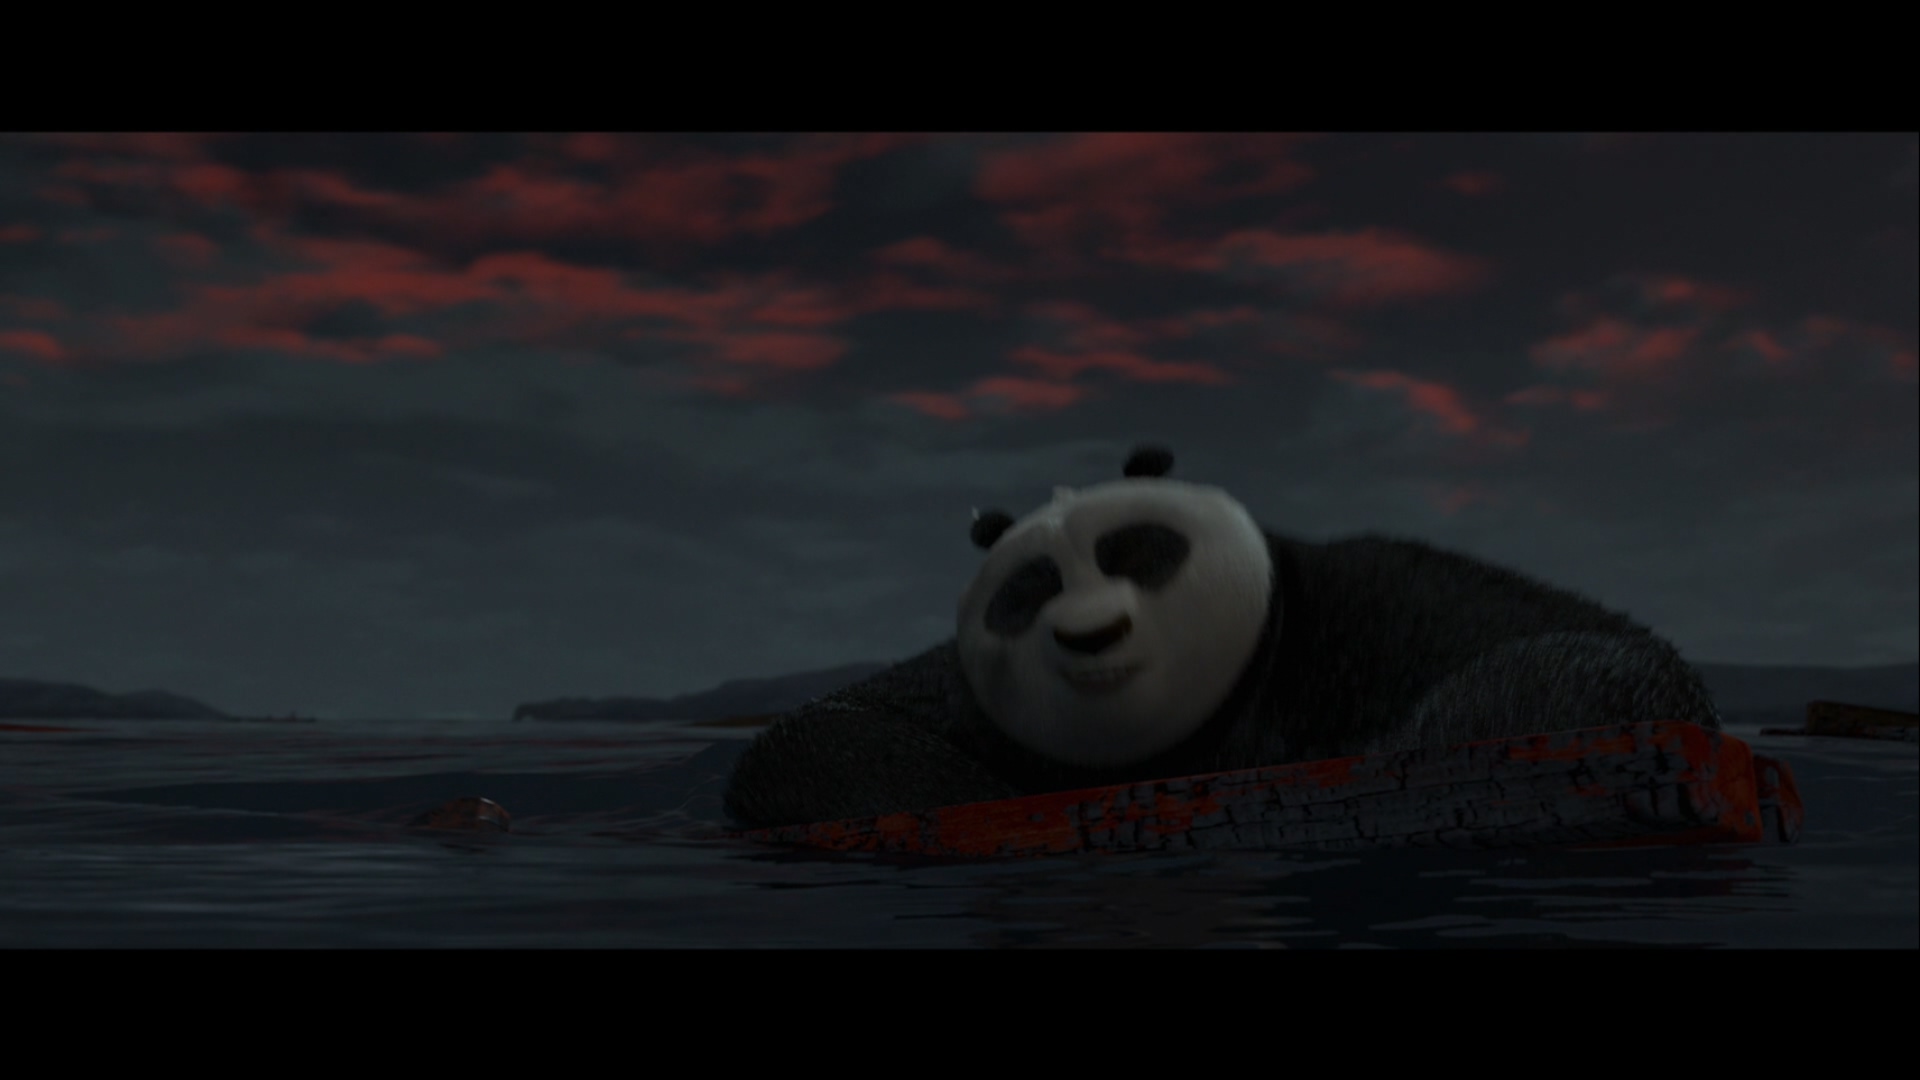 [功夫熊猫2].Kung.Fu.Panda.2.2011.3D.BluRay.1080p.AVC.TrueHD.7.1-LKS   35.53G$  q/ D/ W- f7 C. W0 ~6 s-8.jpg